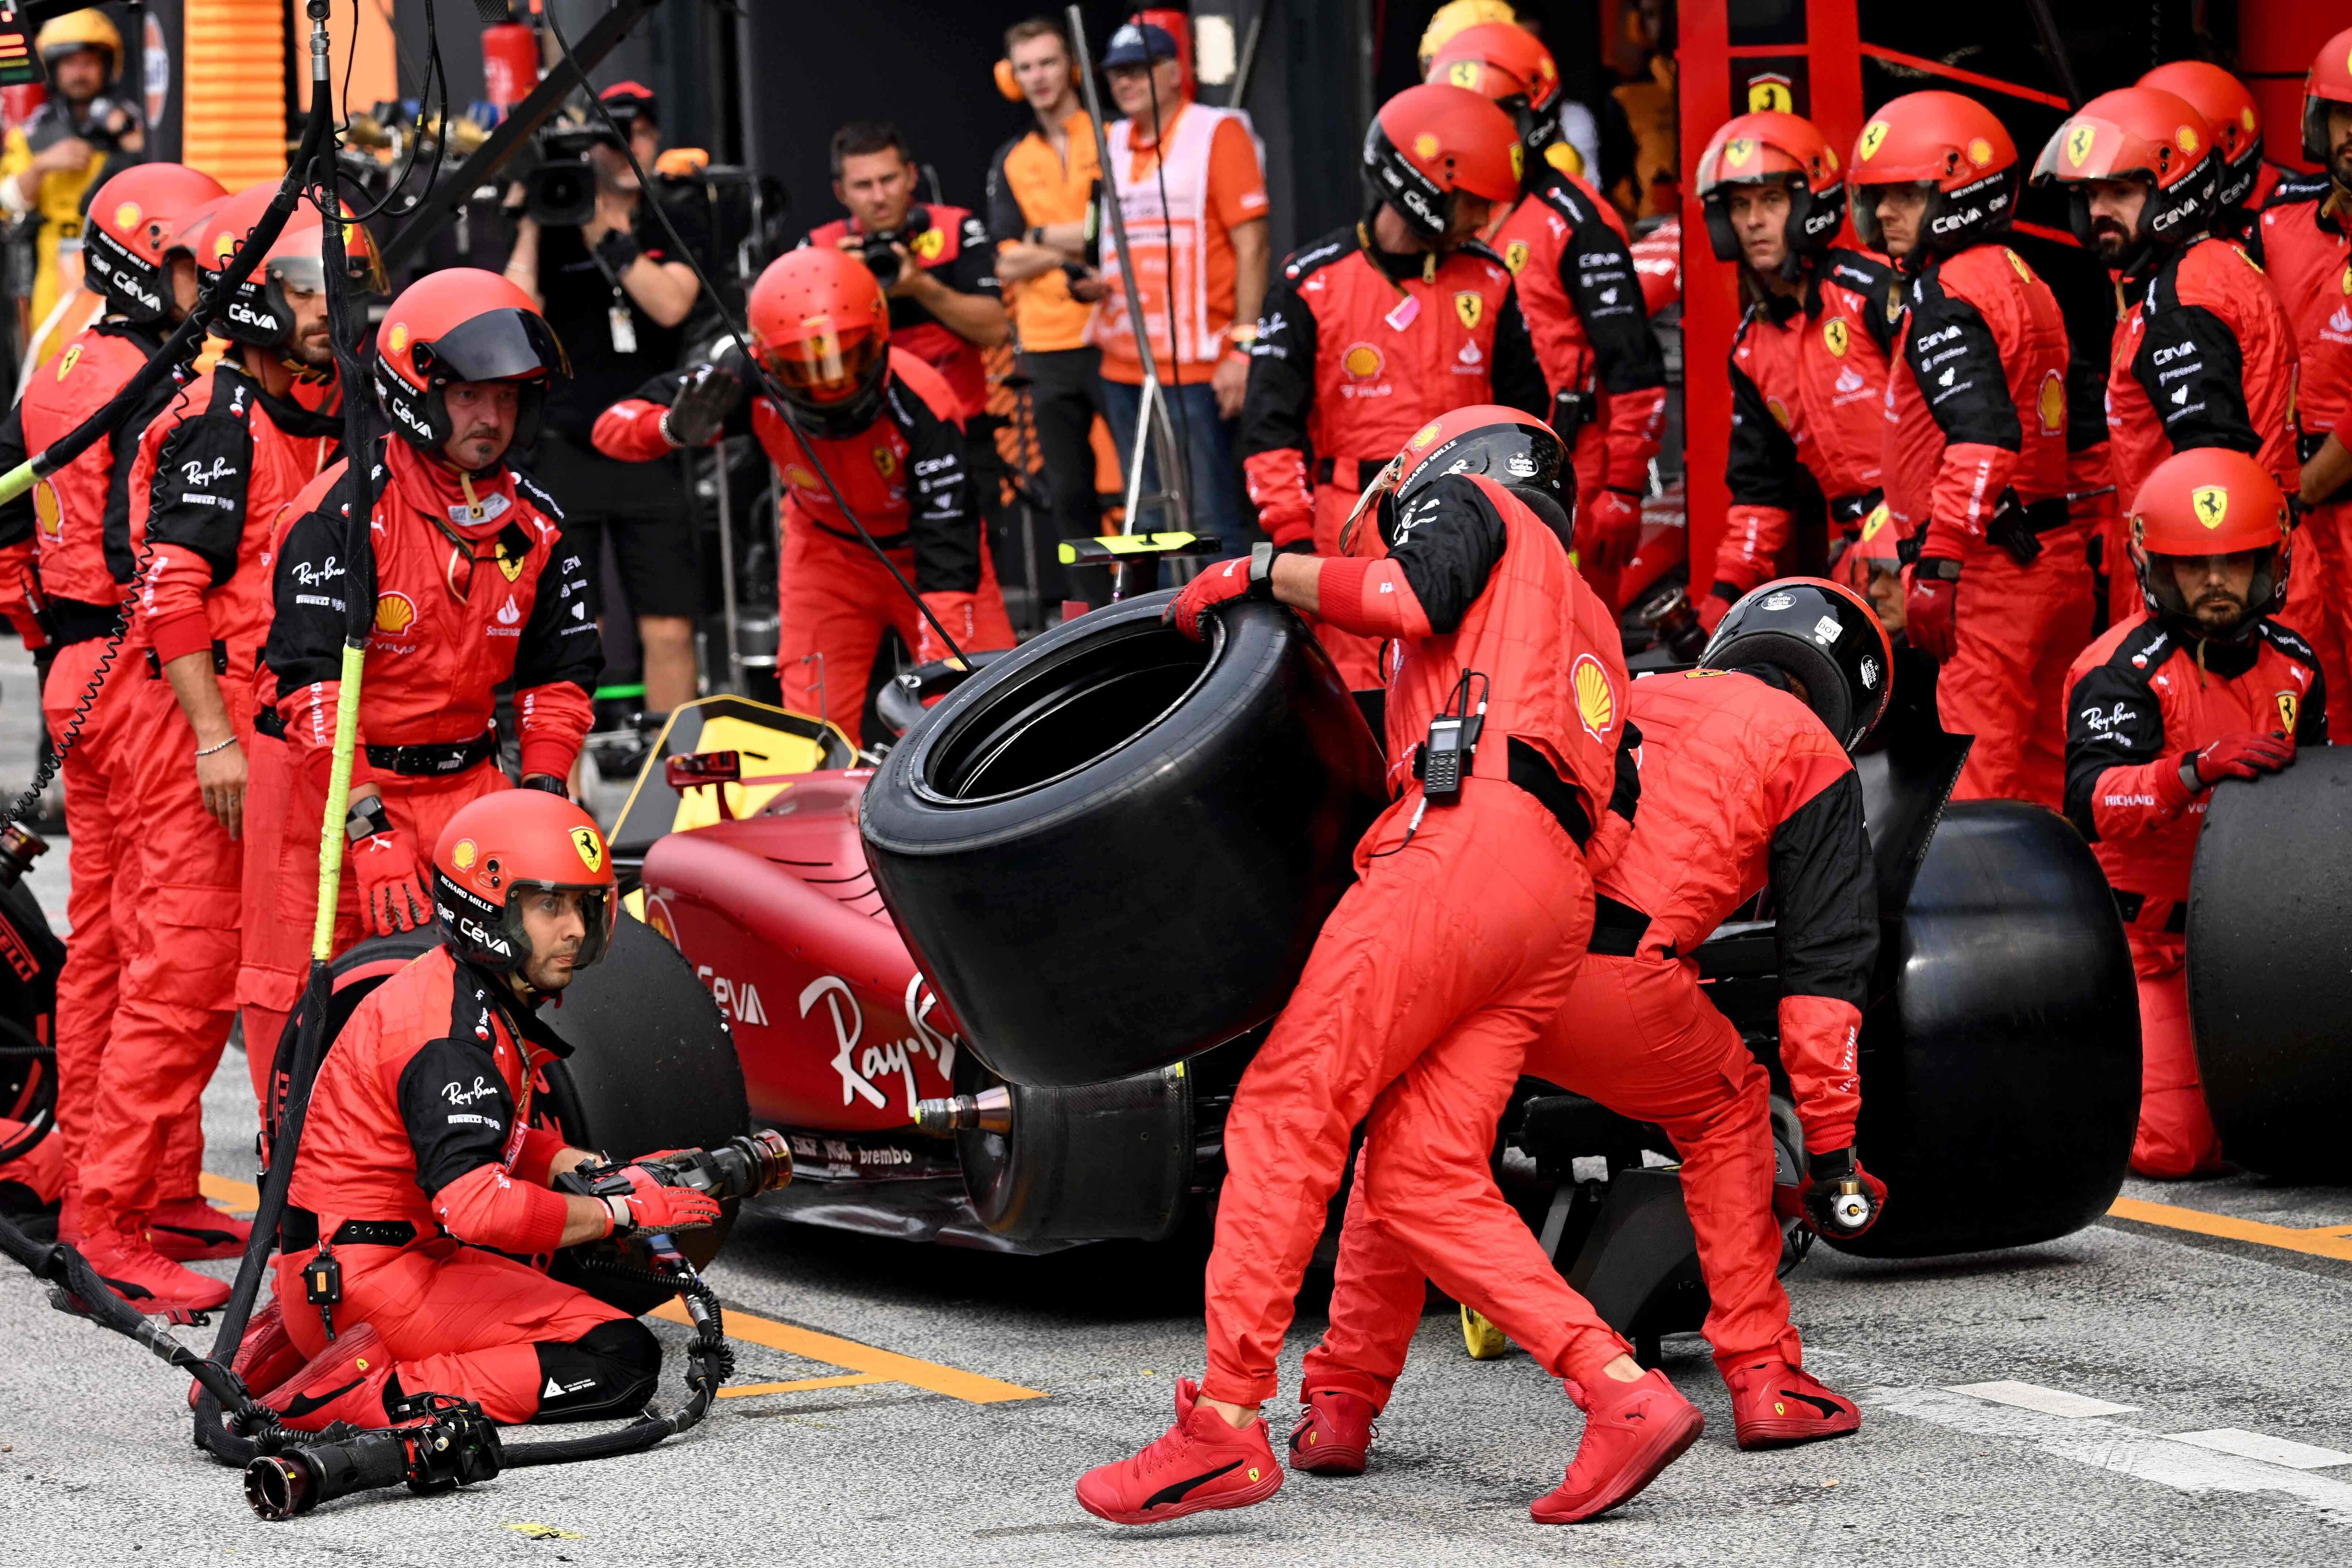 Mas de 12 segundos perdió el piloto español de Ferrari Carlos Sainz en boxes cuando ingresó a cambiar los neumáticos y faltaba el trasero izquierdo.